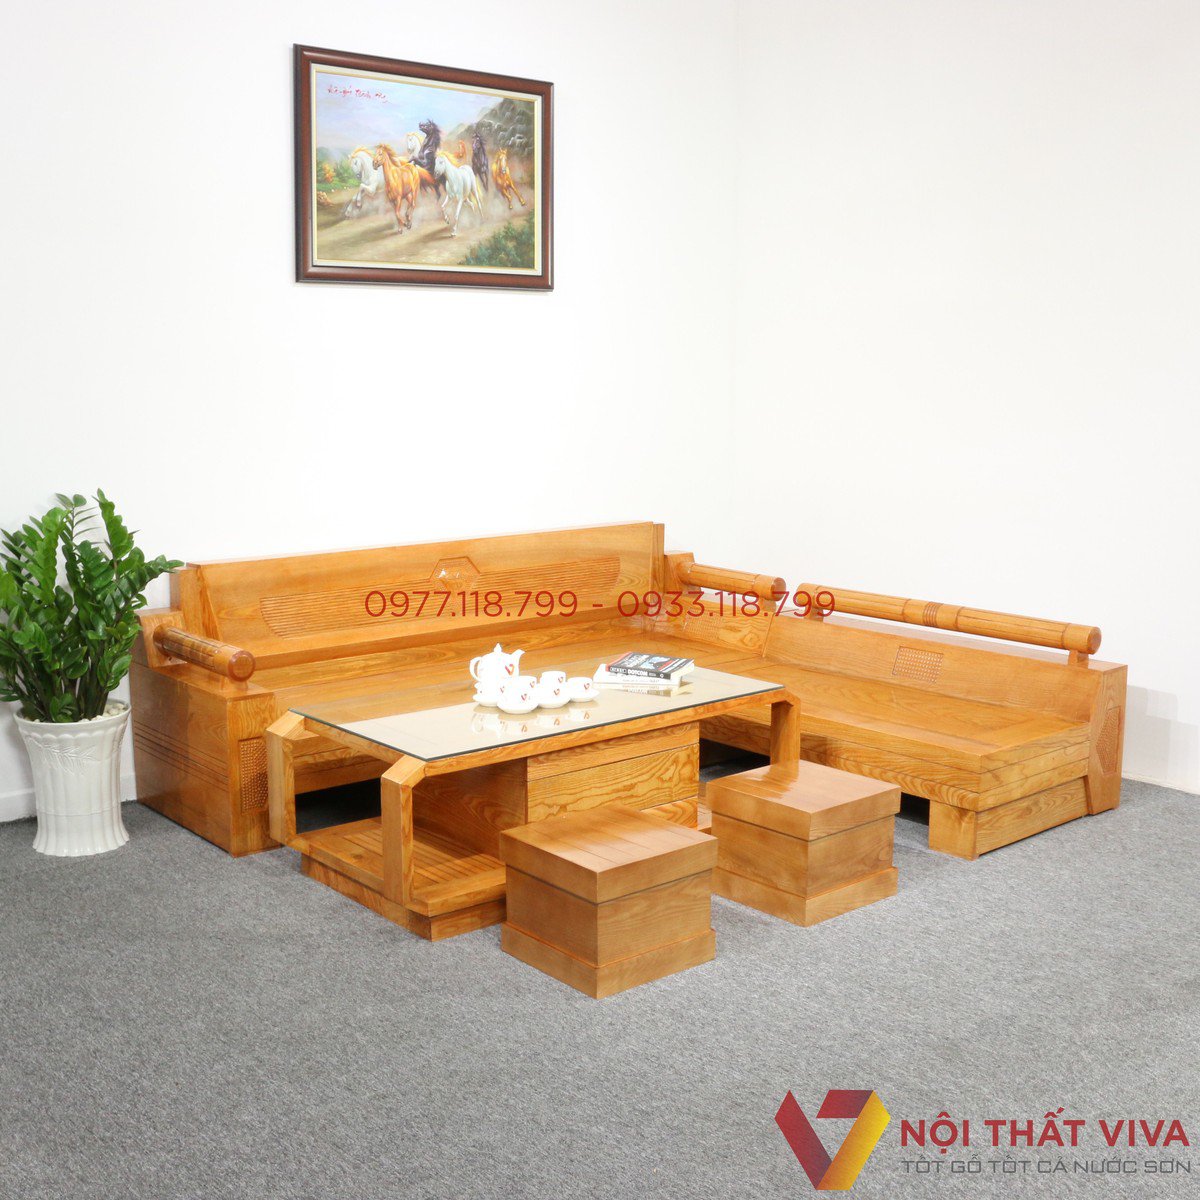 Bộ ghế sofa góc tay trứng gỗ xoan đào SG06 ⋆ Nội thất Dung Thủy